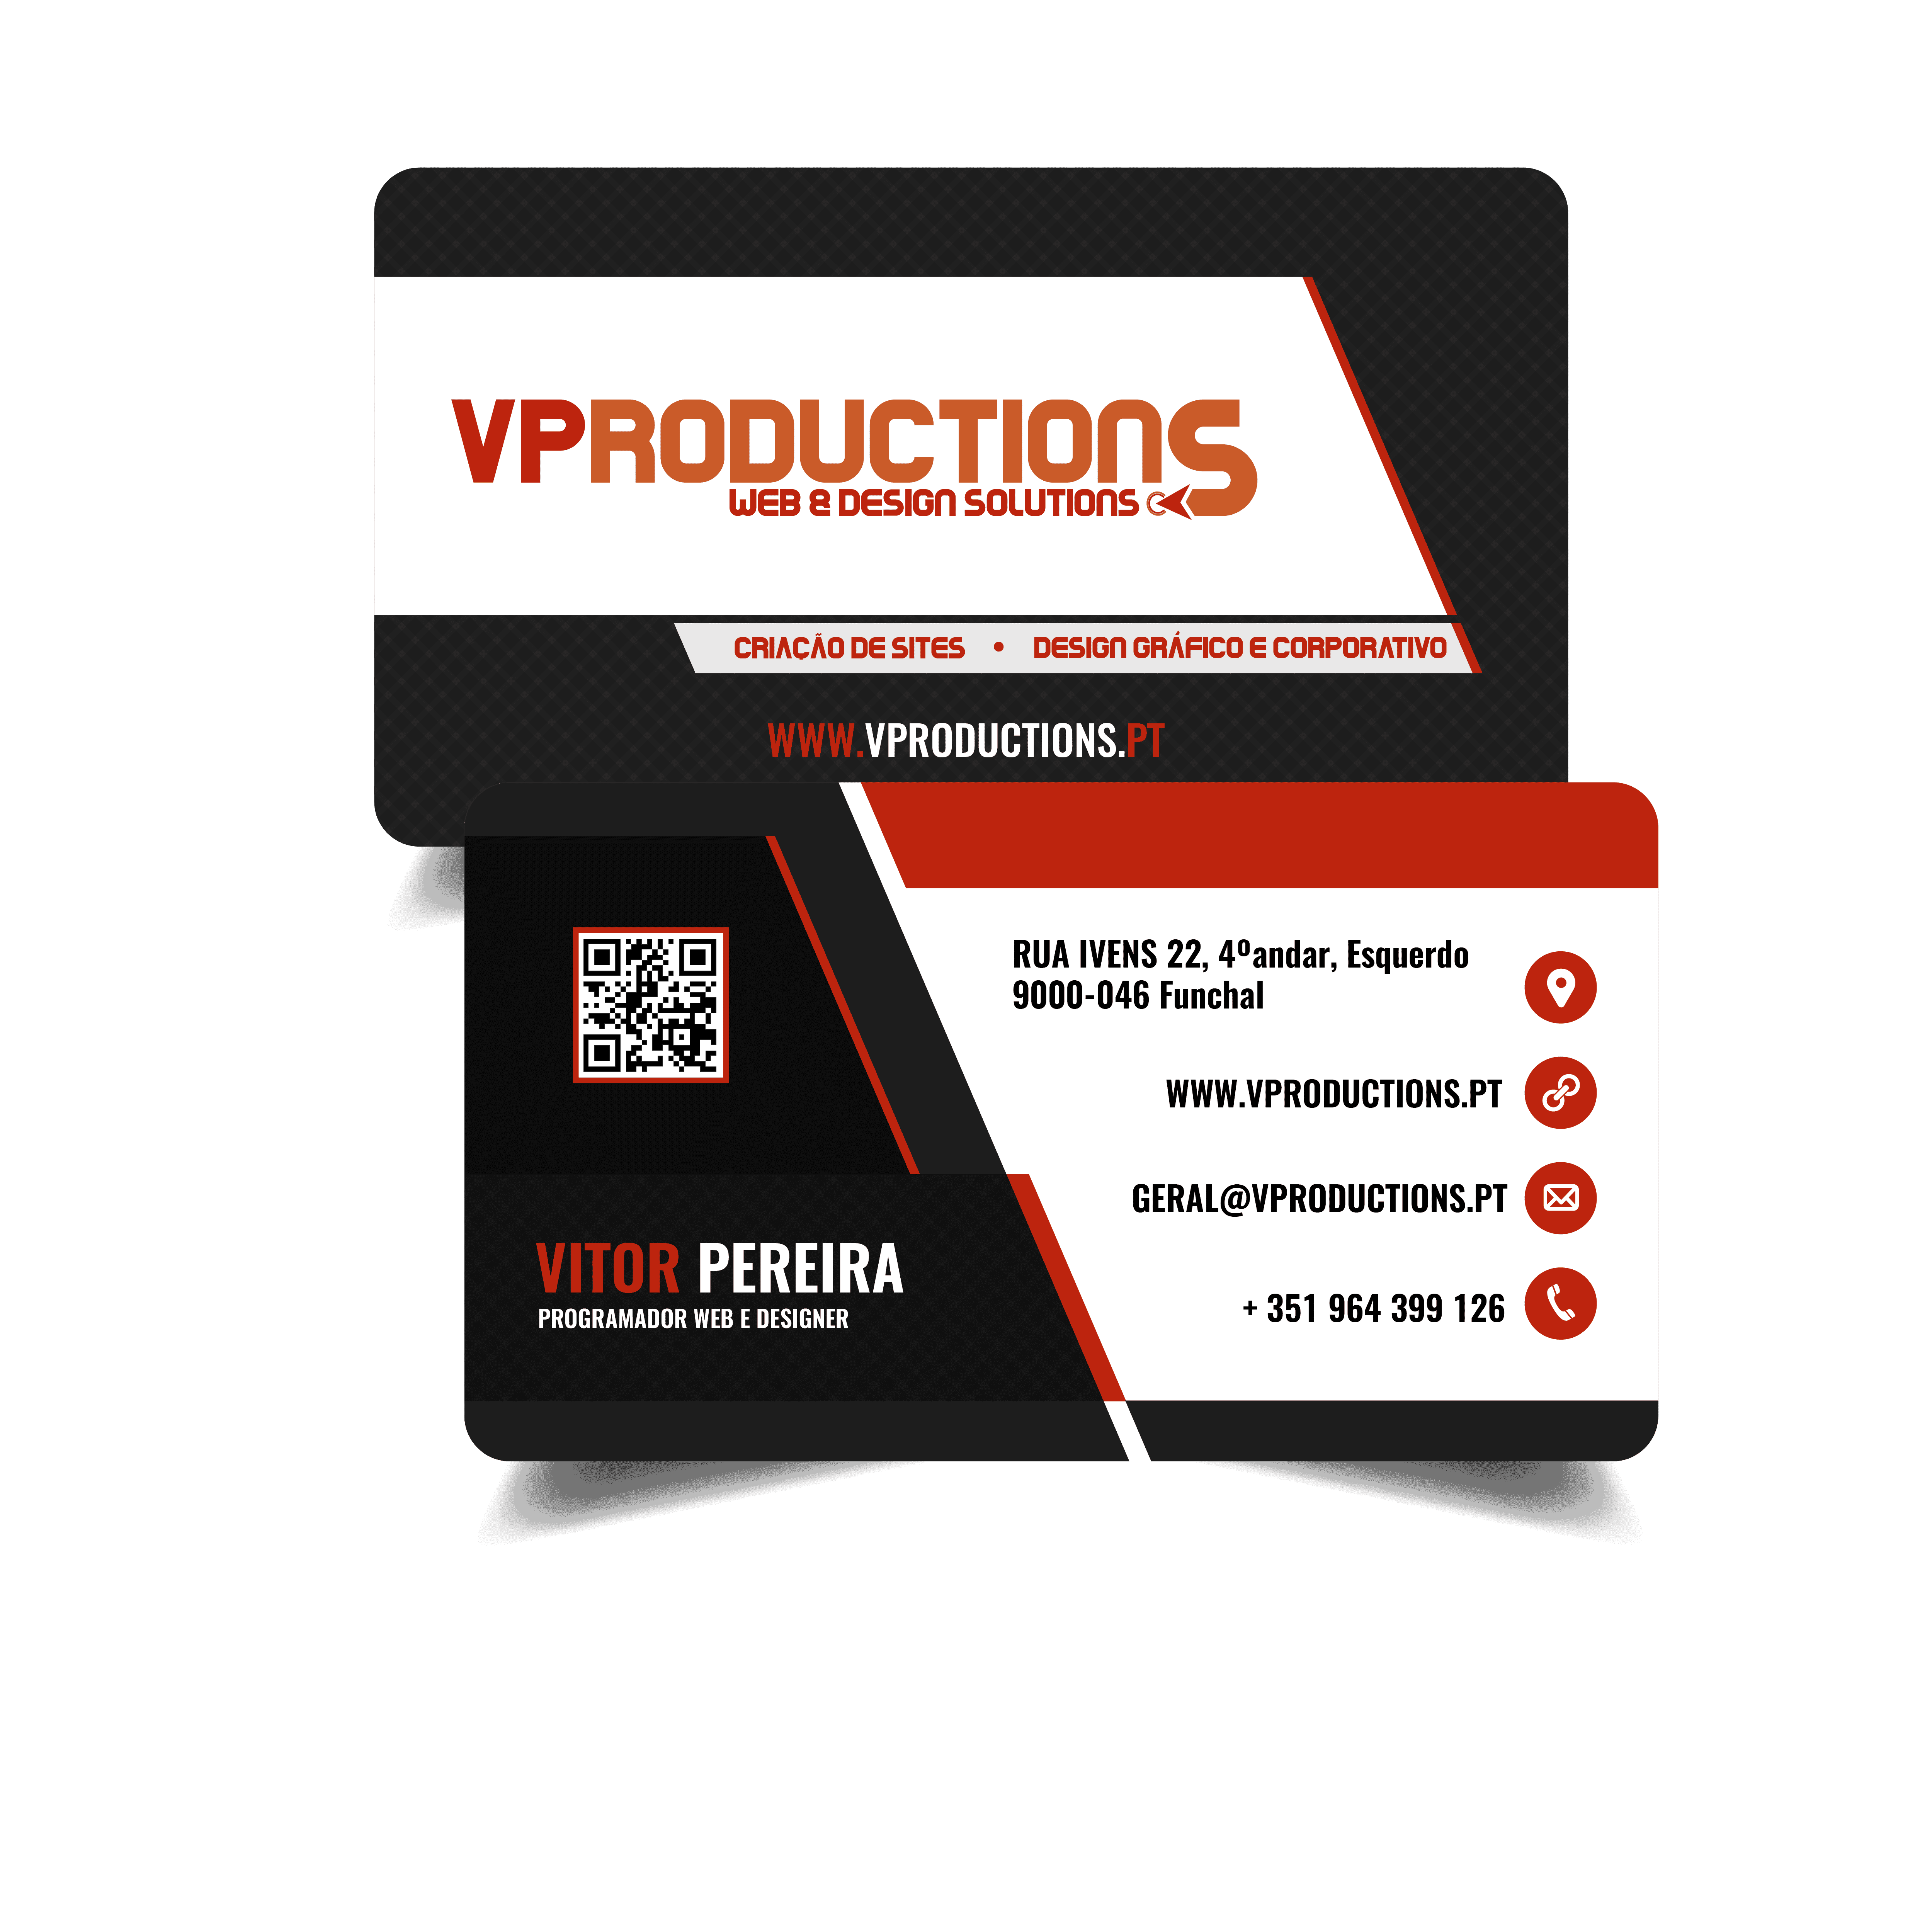 cartao vproductionsv2-01